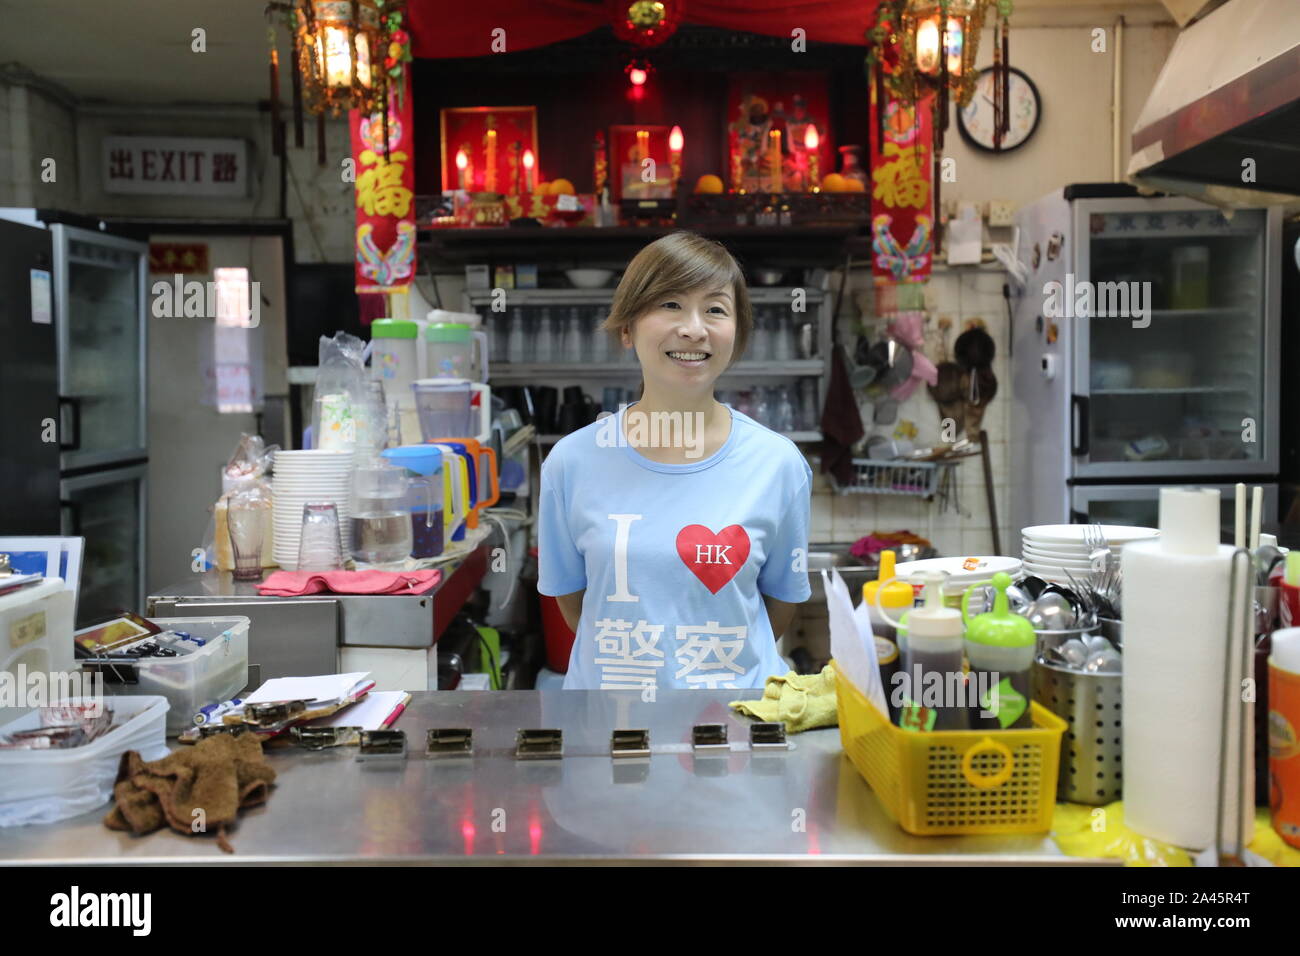 (191012) - HONG KONG, Oktober 12, 2019 (Xinhua) - Kate Lee, trug ein T-Shirt mit 'I HK Polizei" Slogan auf es lieben, wartet auf die Kunden an ihrem Tee Restaurant in Kowloon, South China Hong Kong, Okt. 10, 2019. Eingebettet in die labyrinthischen Seafood Market der ruhigen Fischerdorf Lei Yue Mun in Hongkong, einem gemütlichen kleinen Kaffee Restaurant hat unerwartet ein Leuchtfeuer der Mut für die gewöhnlichen Menschen in Hongkong, die Ruhe, inmitten der letzten Chaos. Nachdem sie veröffentlicht Bilder sichern Hong Kong Polizei gegen einige radikale Demonstranten Ende Juni, Kate Lee, der Eigentümer der Kaffee Restaurant Stockfoto